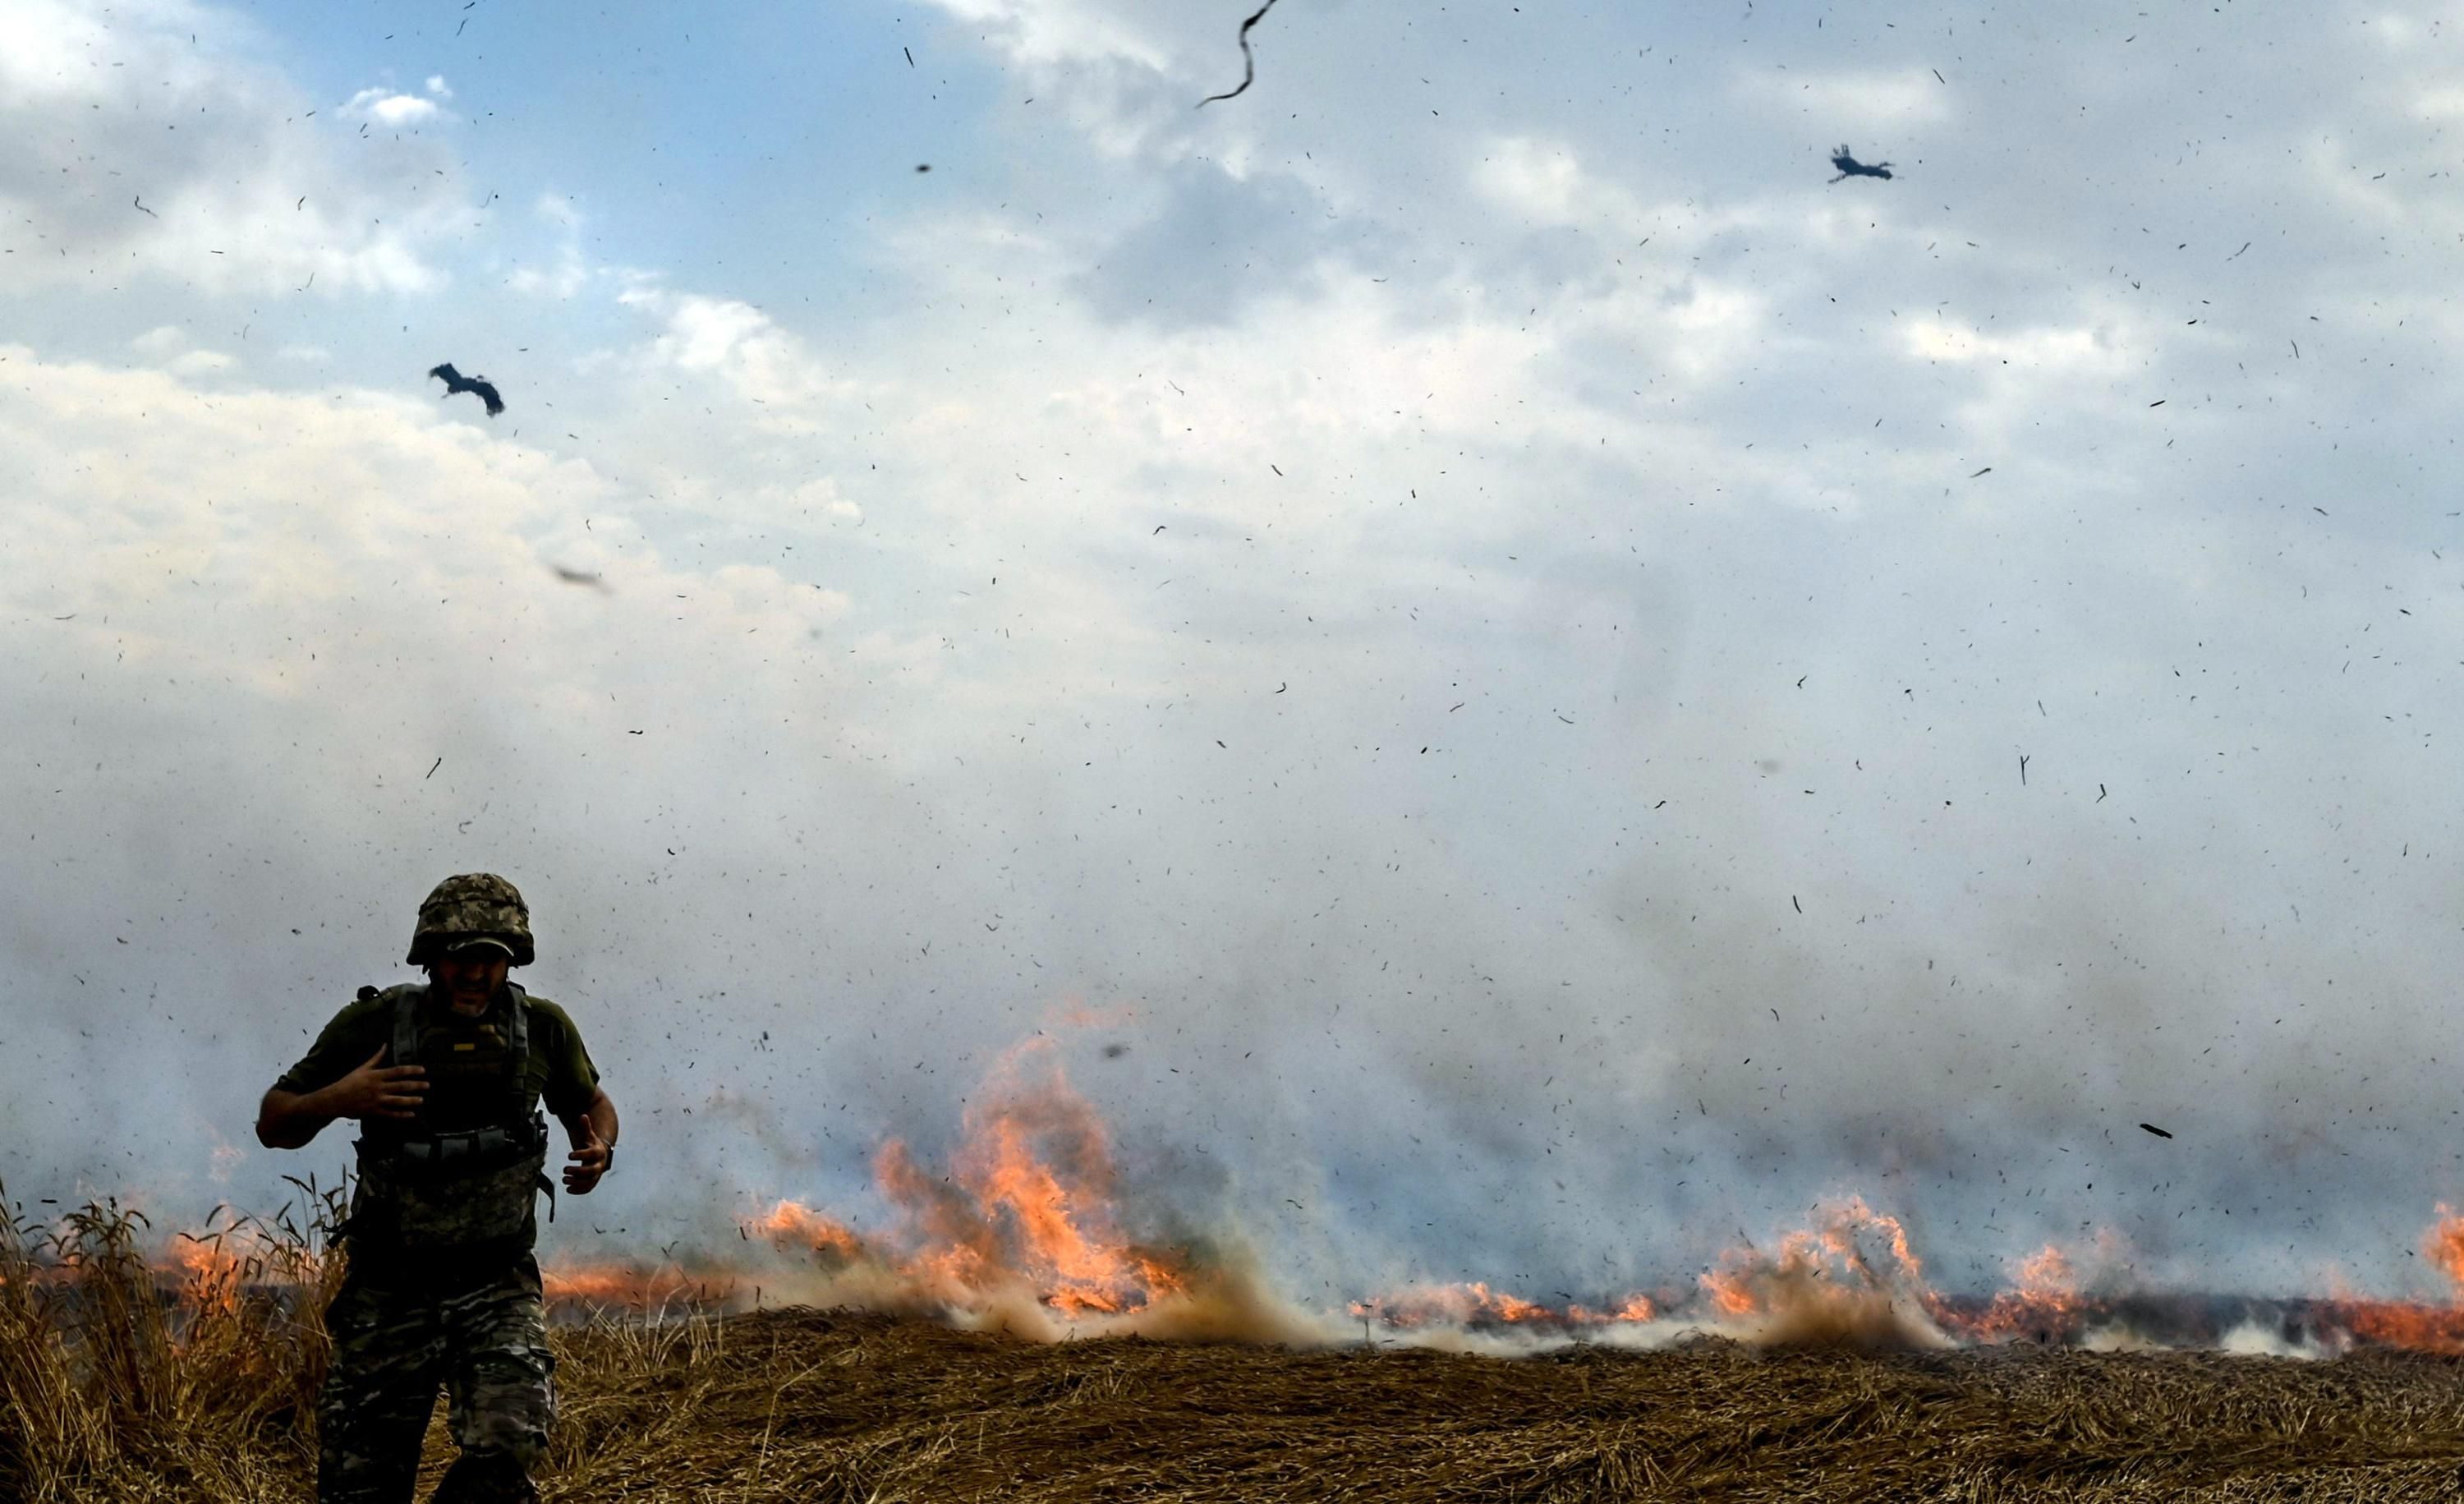 A wheat field burns in Ukraine